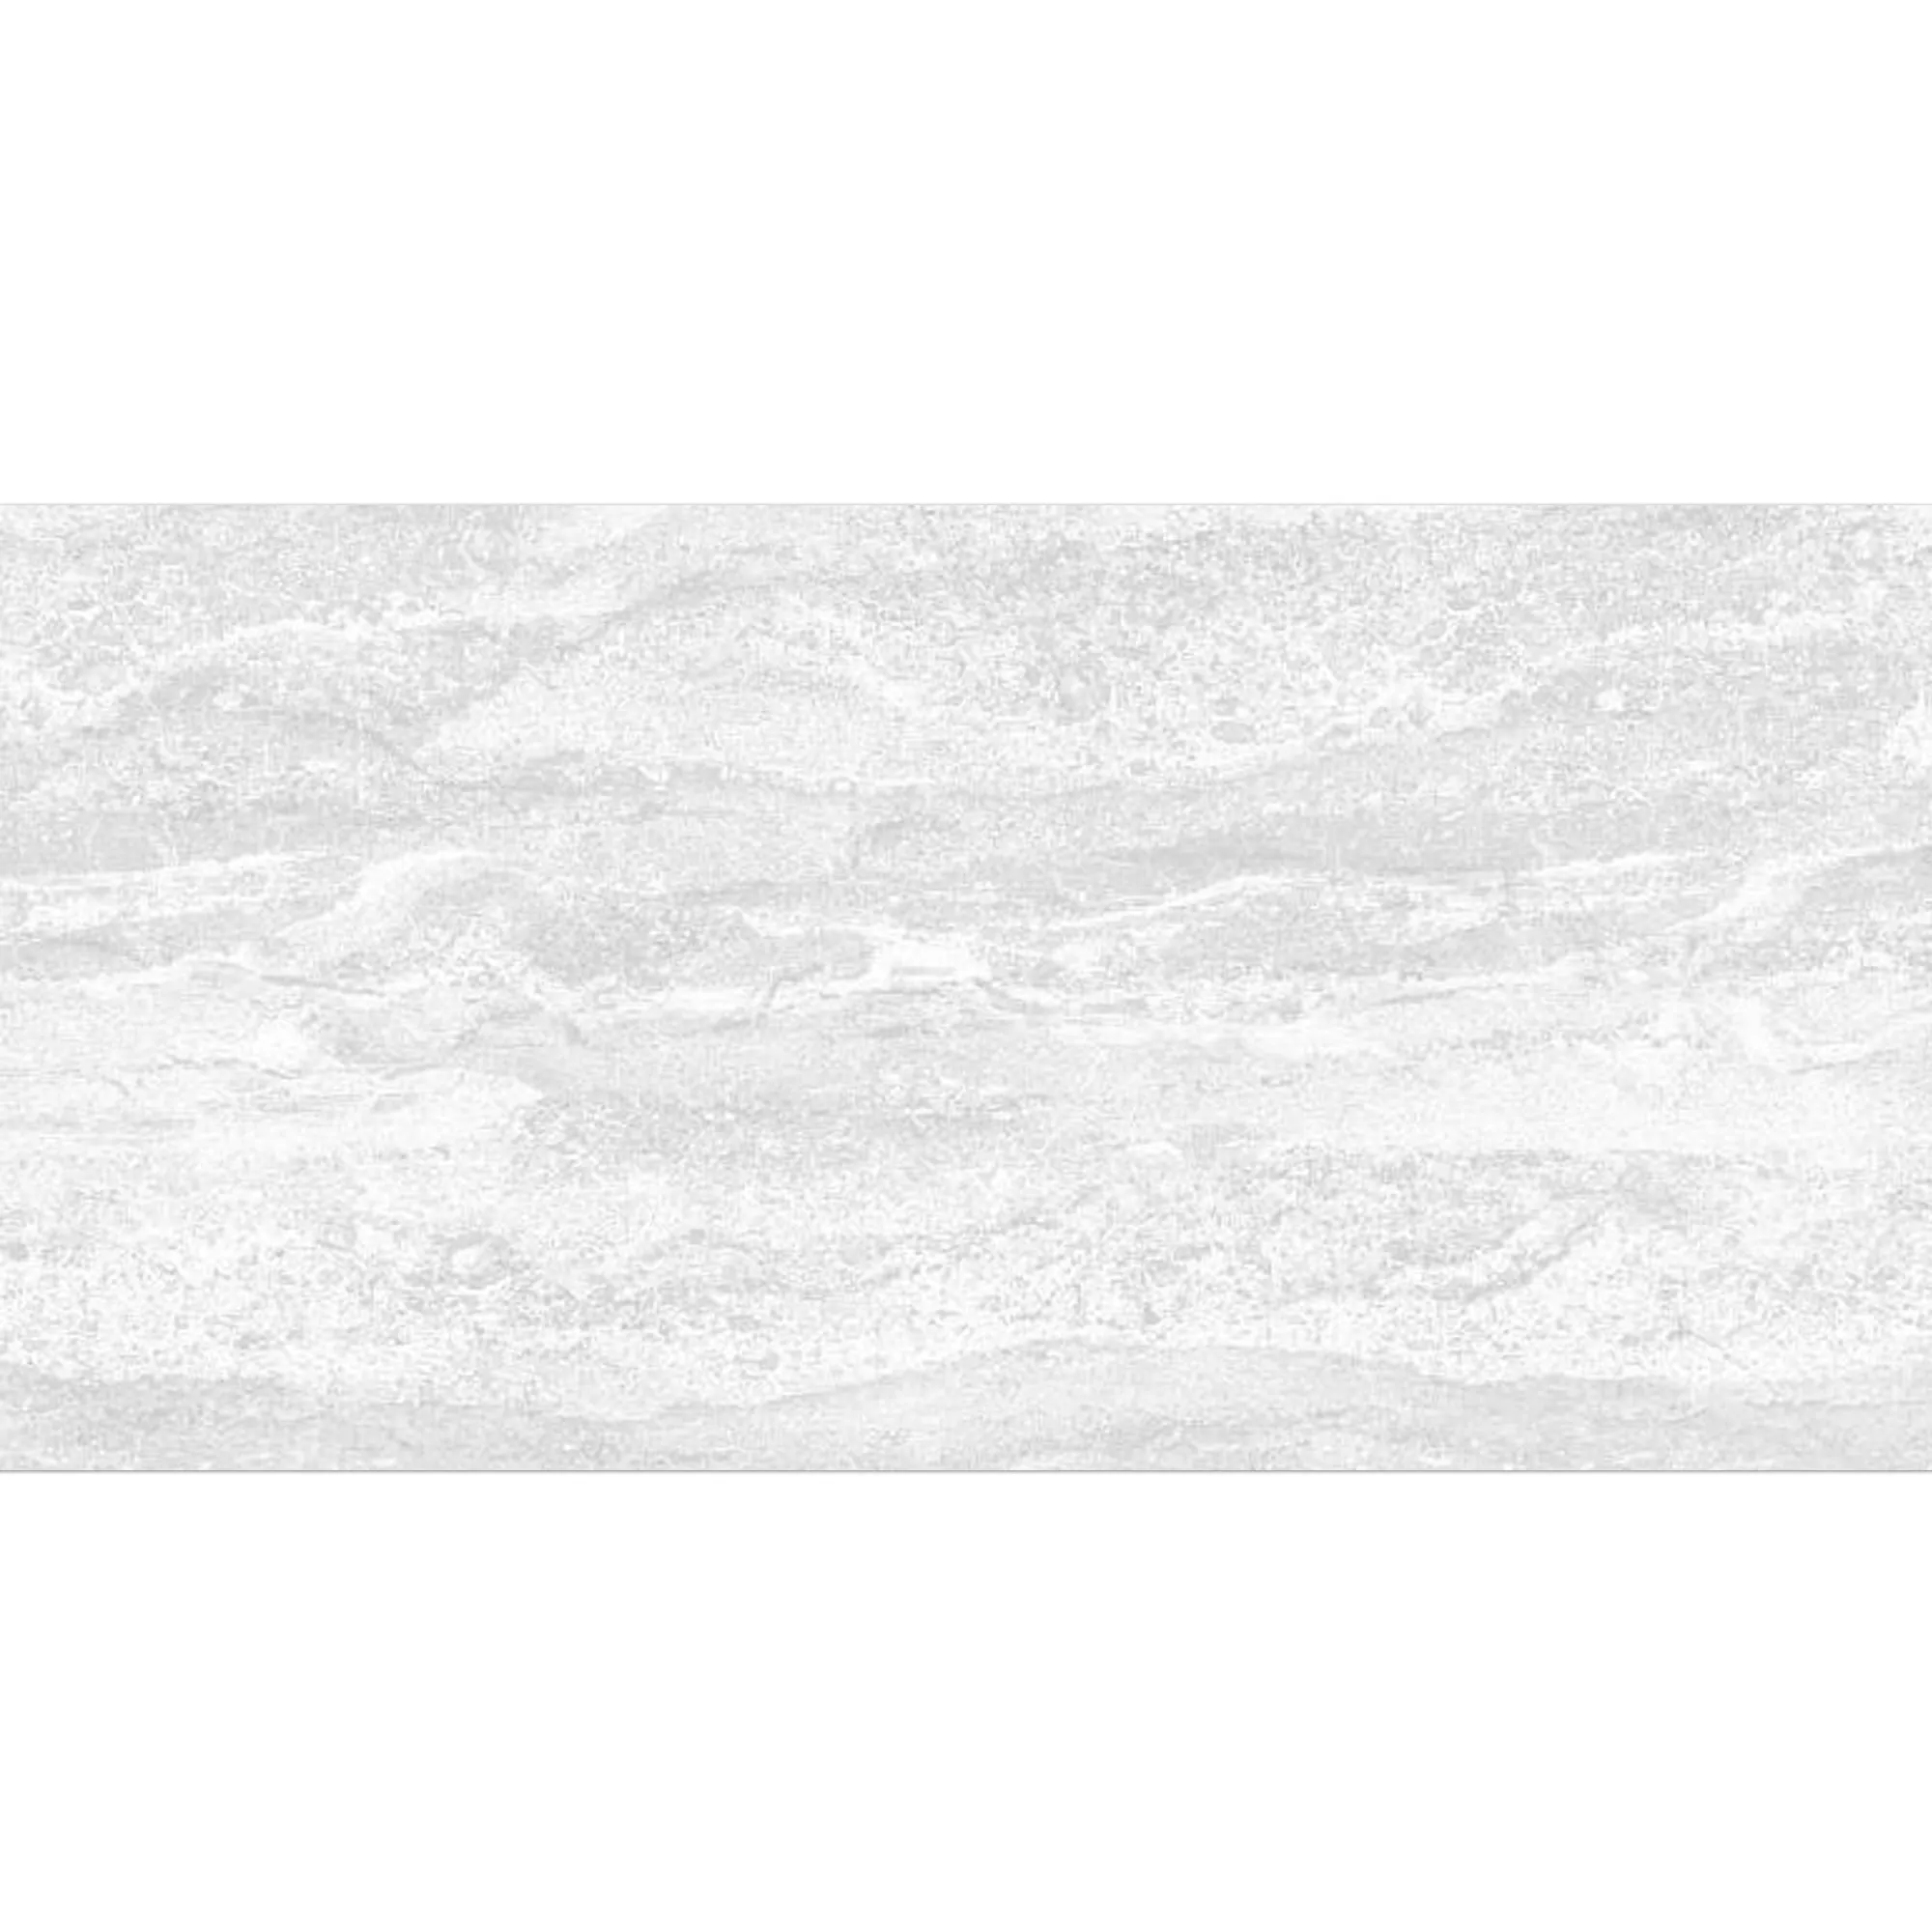 Πλακάκι Tοίχου Bellinzona Ασπρο Δομημένος 30x60cm